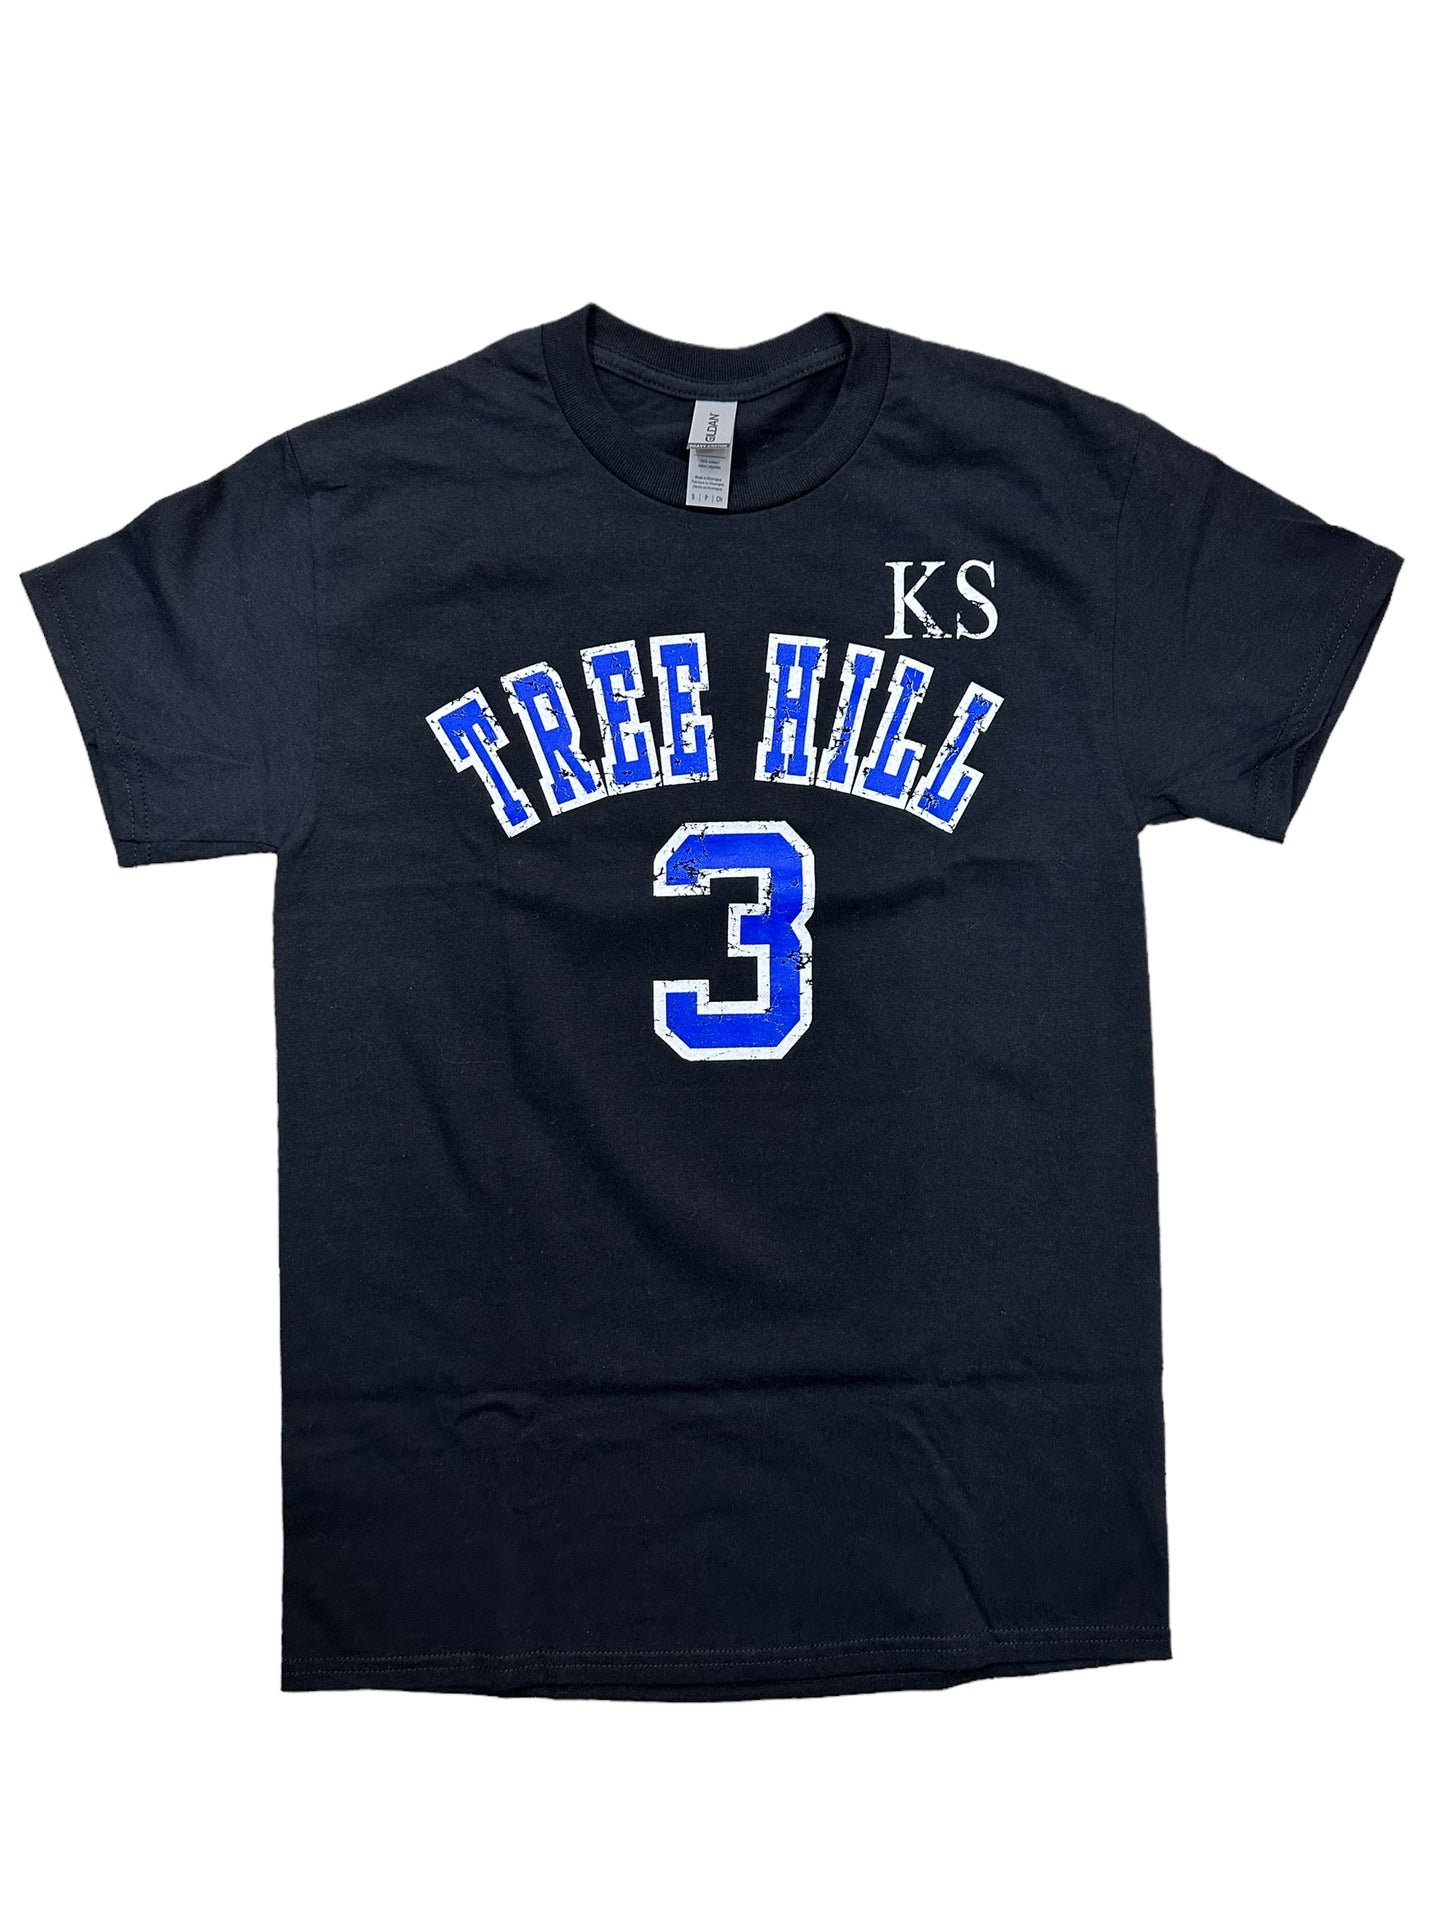 Scott 3 One Tree Hill – T Shirt – Black